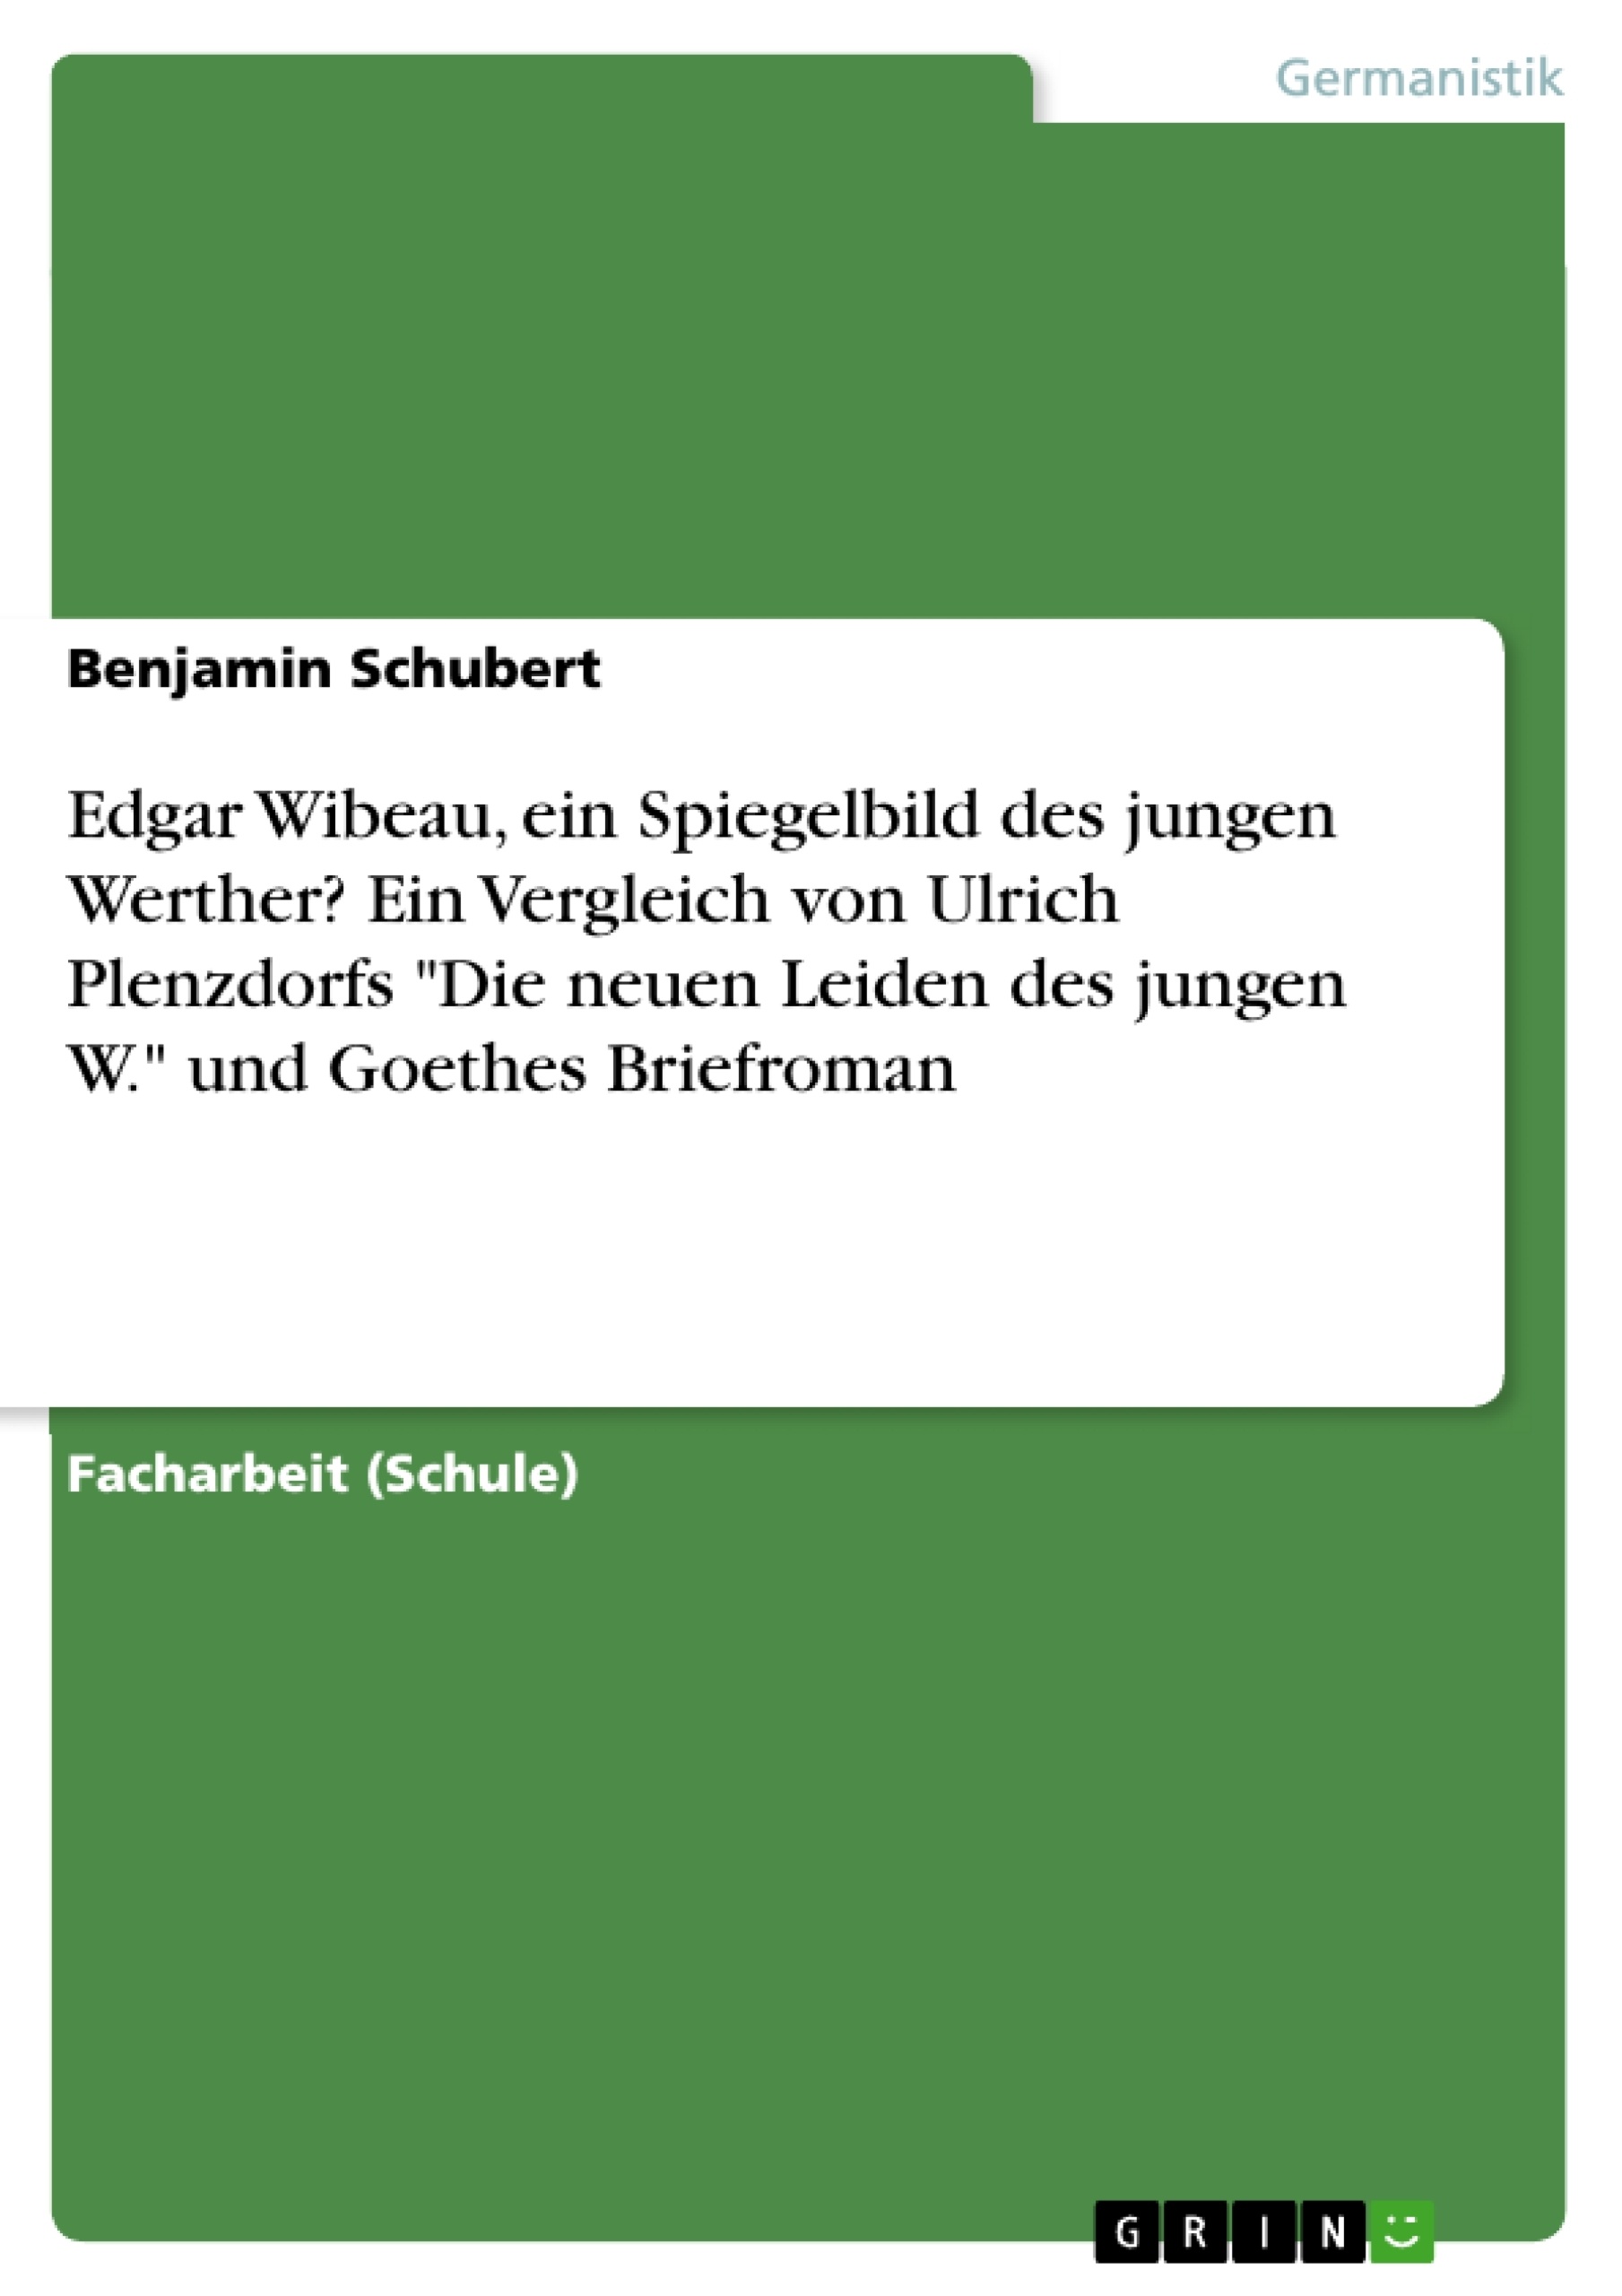 Titre: Edgar Wibeau, ein Spiegelbild des jungen Werther? Ein Vergleich von Ulrich Plenzdorfs "Die neuen Leiden des jungen W." und Goethes Briefroman